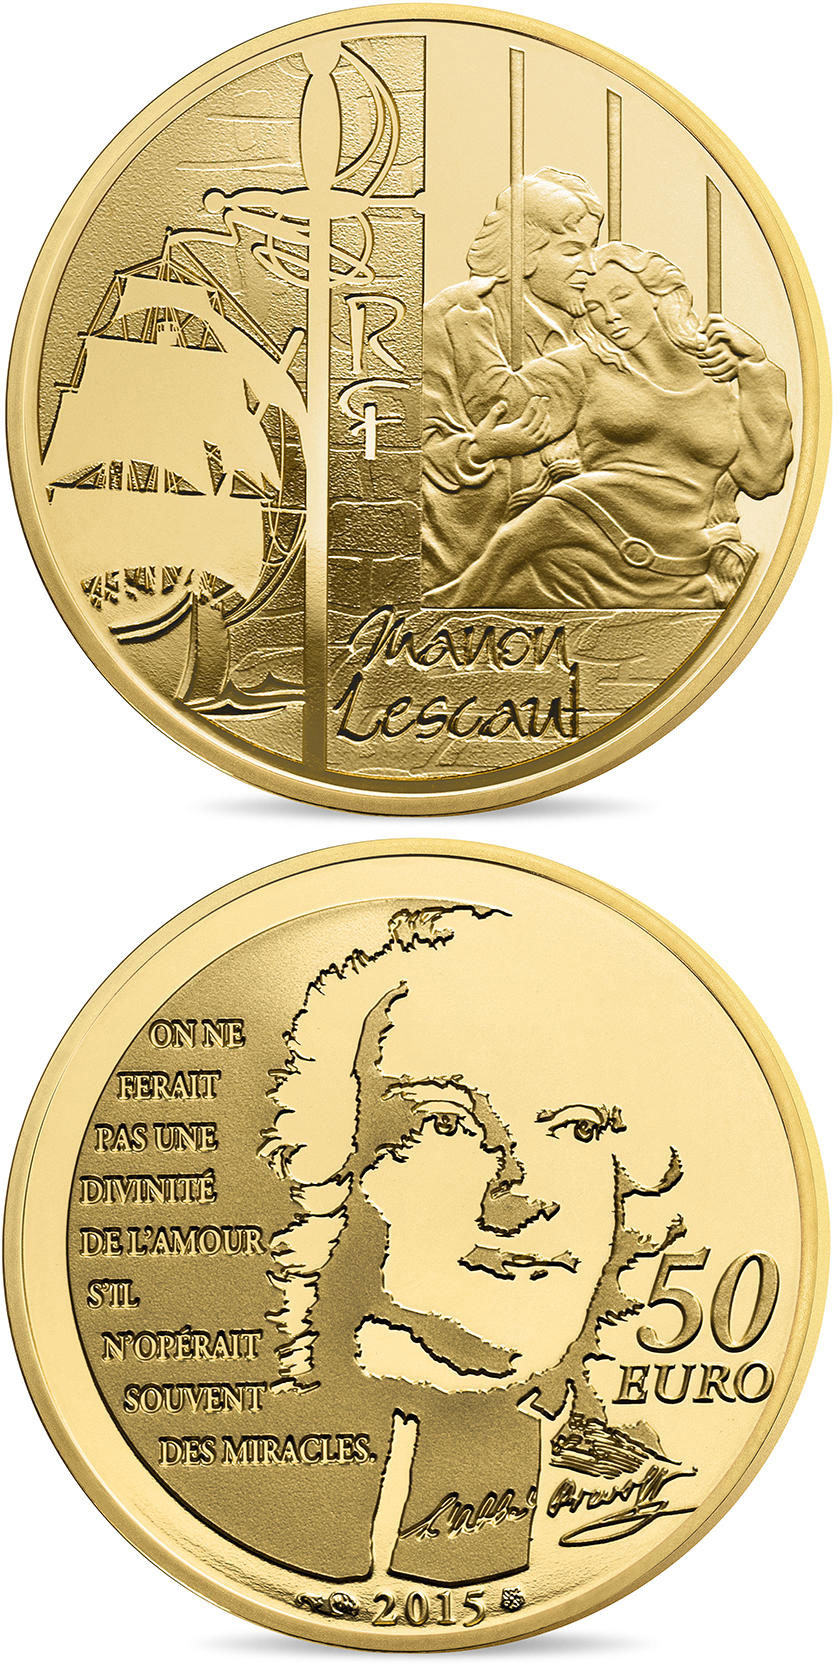 10 euro coin - Manon Lescaut | France 2015